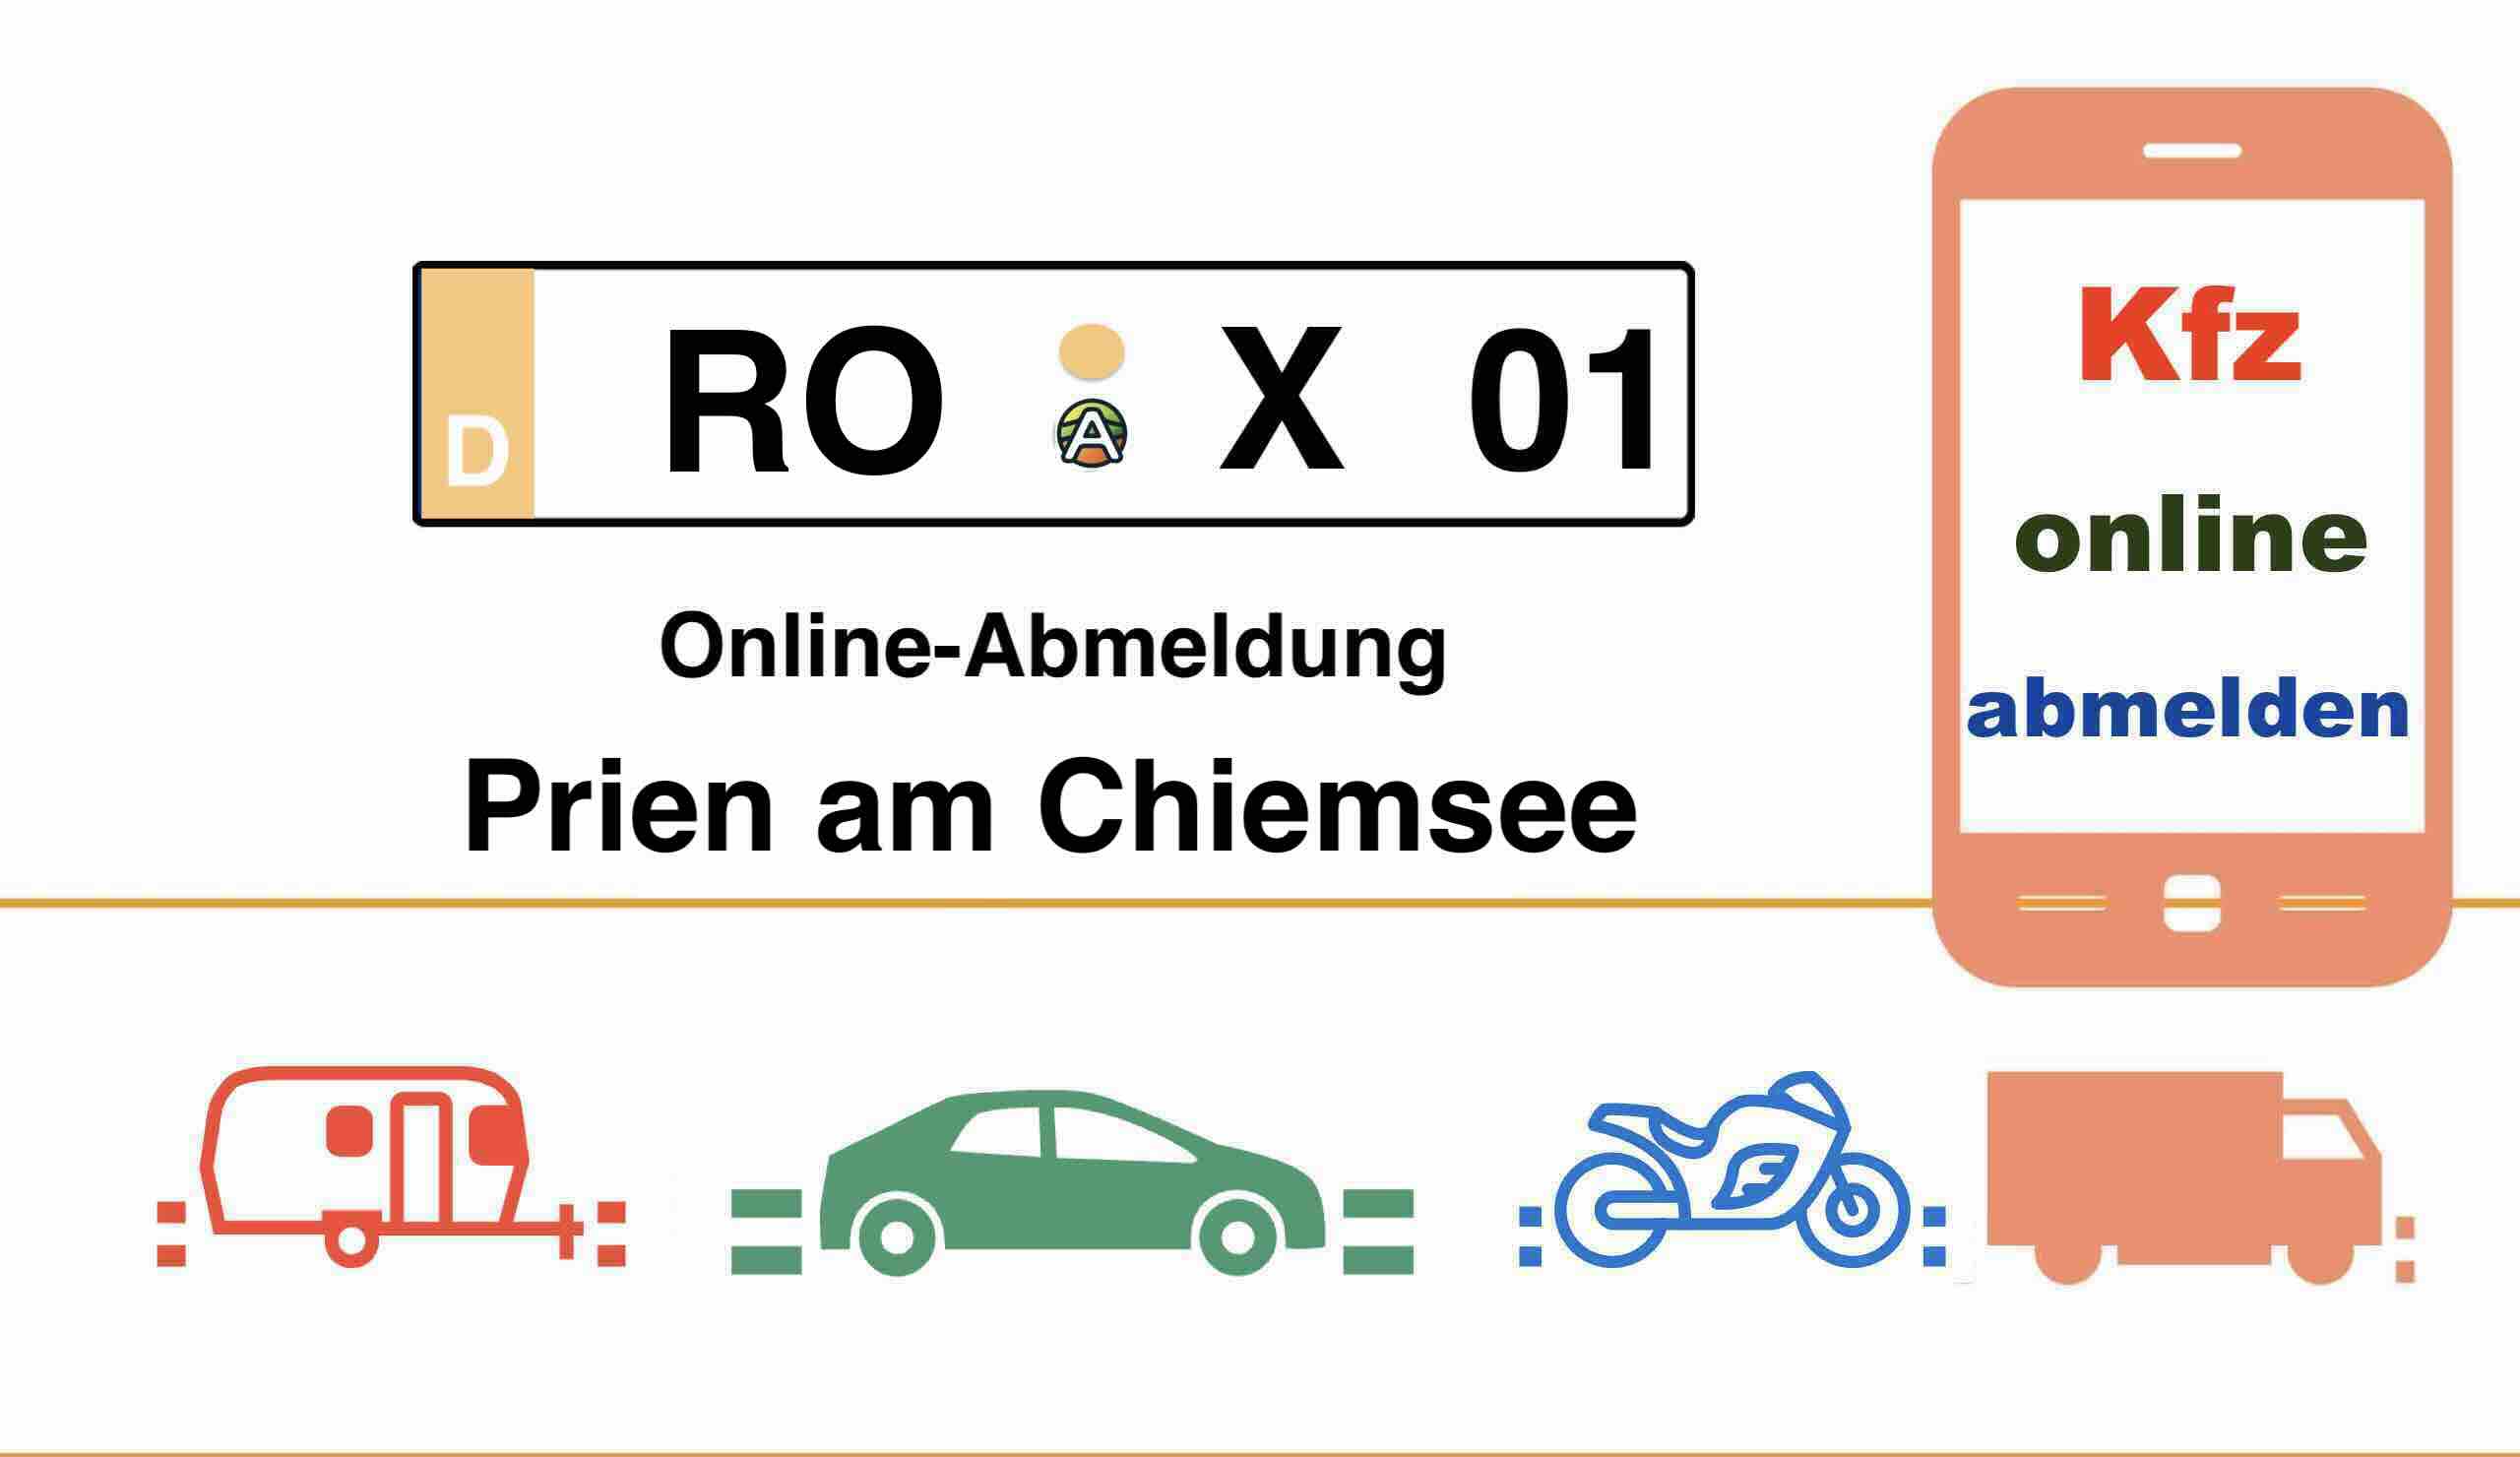 Kfz Online-Abmeldung in Prien am Chiemsee für Autos Anhänger und Motorräder